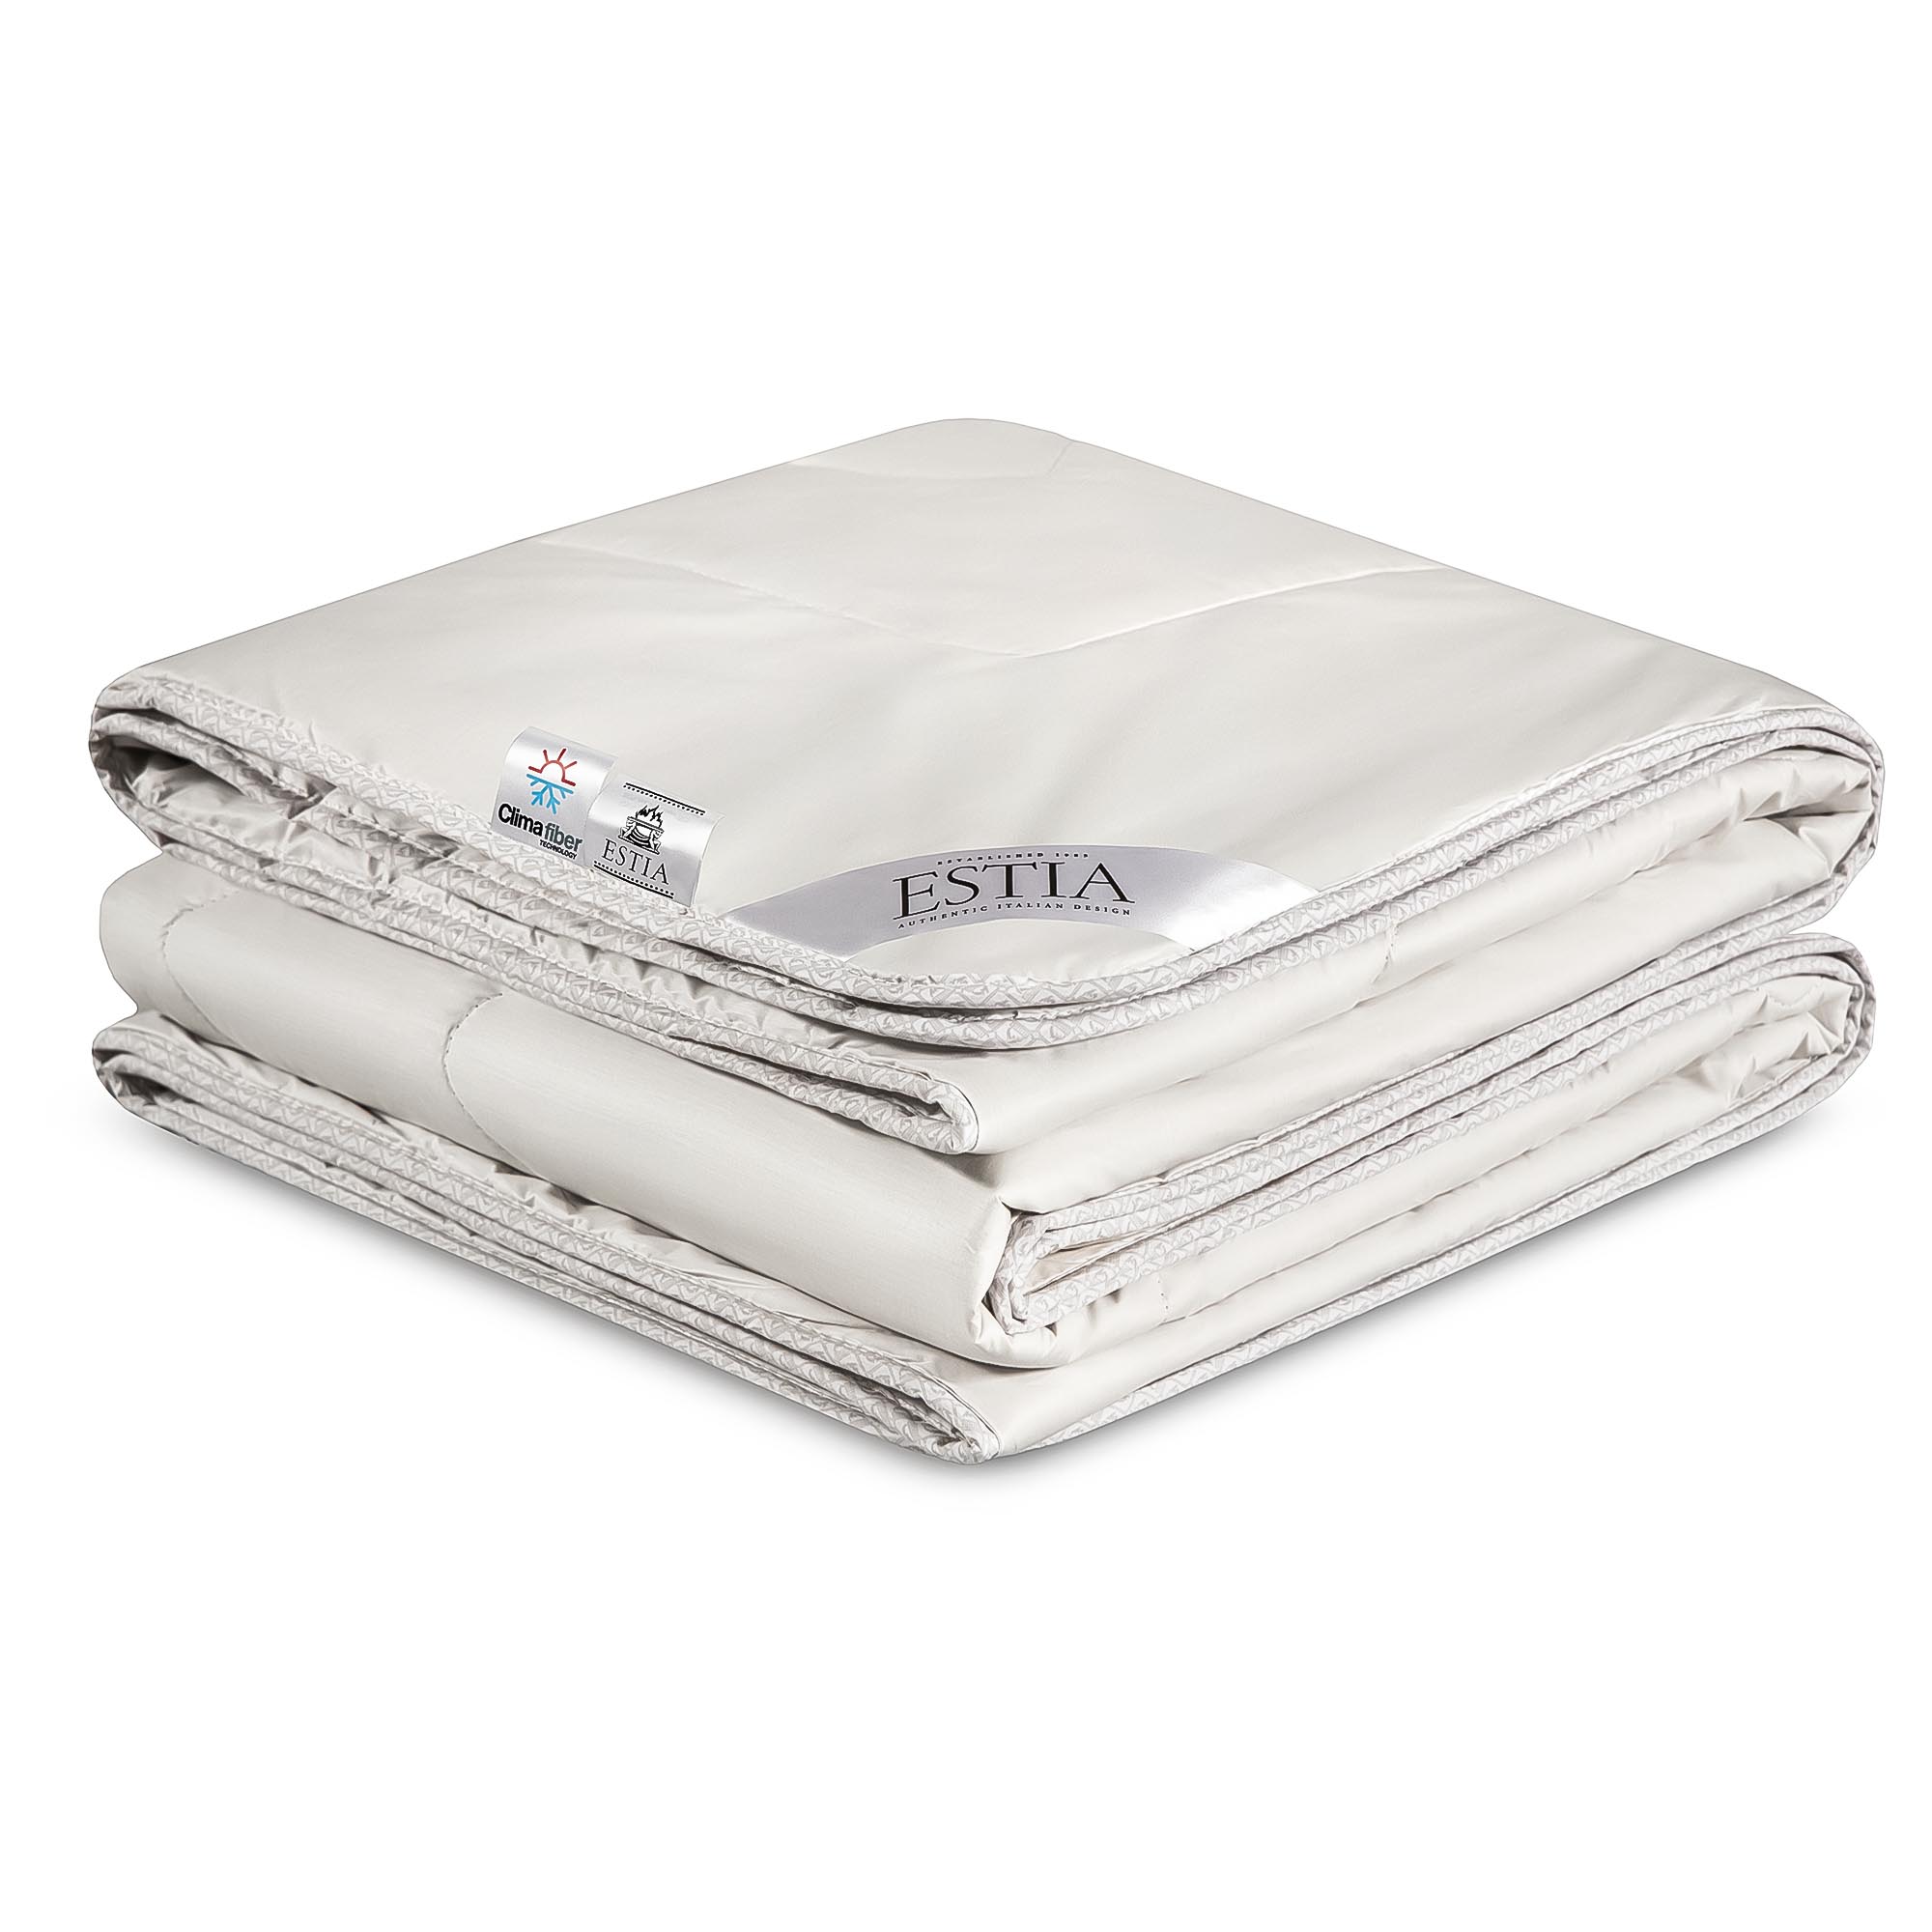 Одеяло Estia Монте Кальво белое 200х210 см (99.62.82.0001) цена и фото